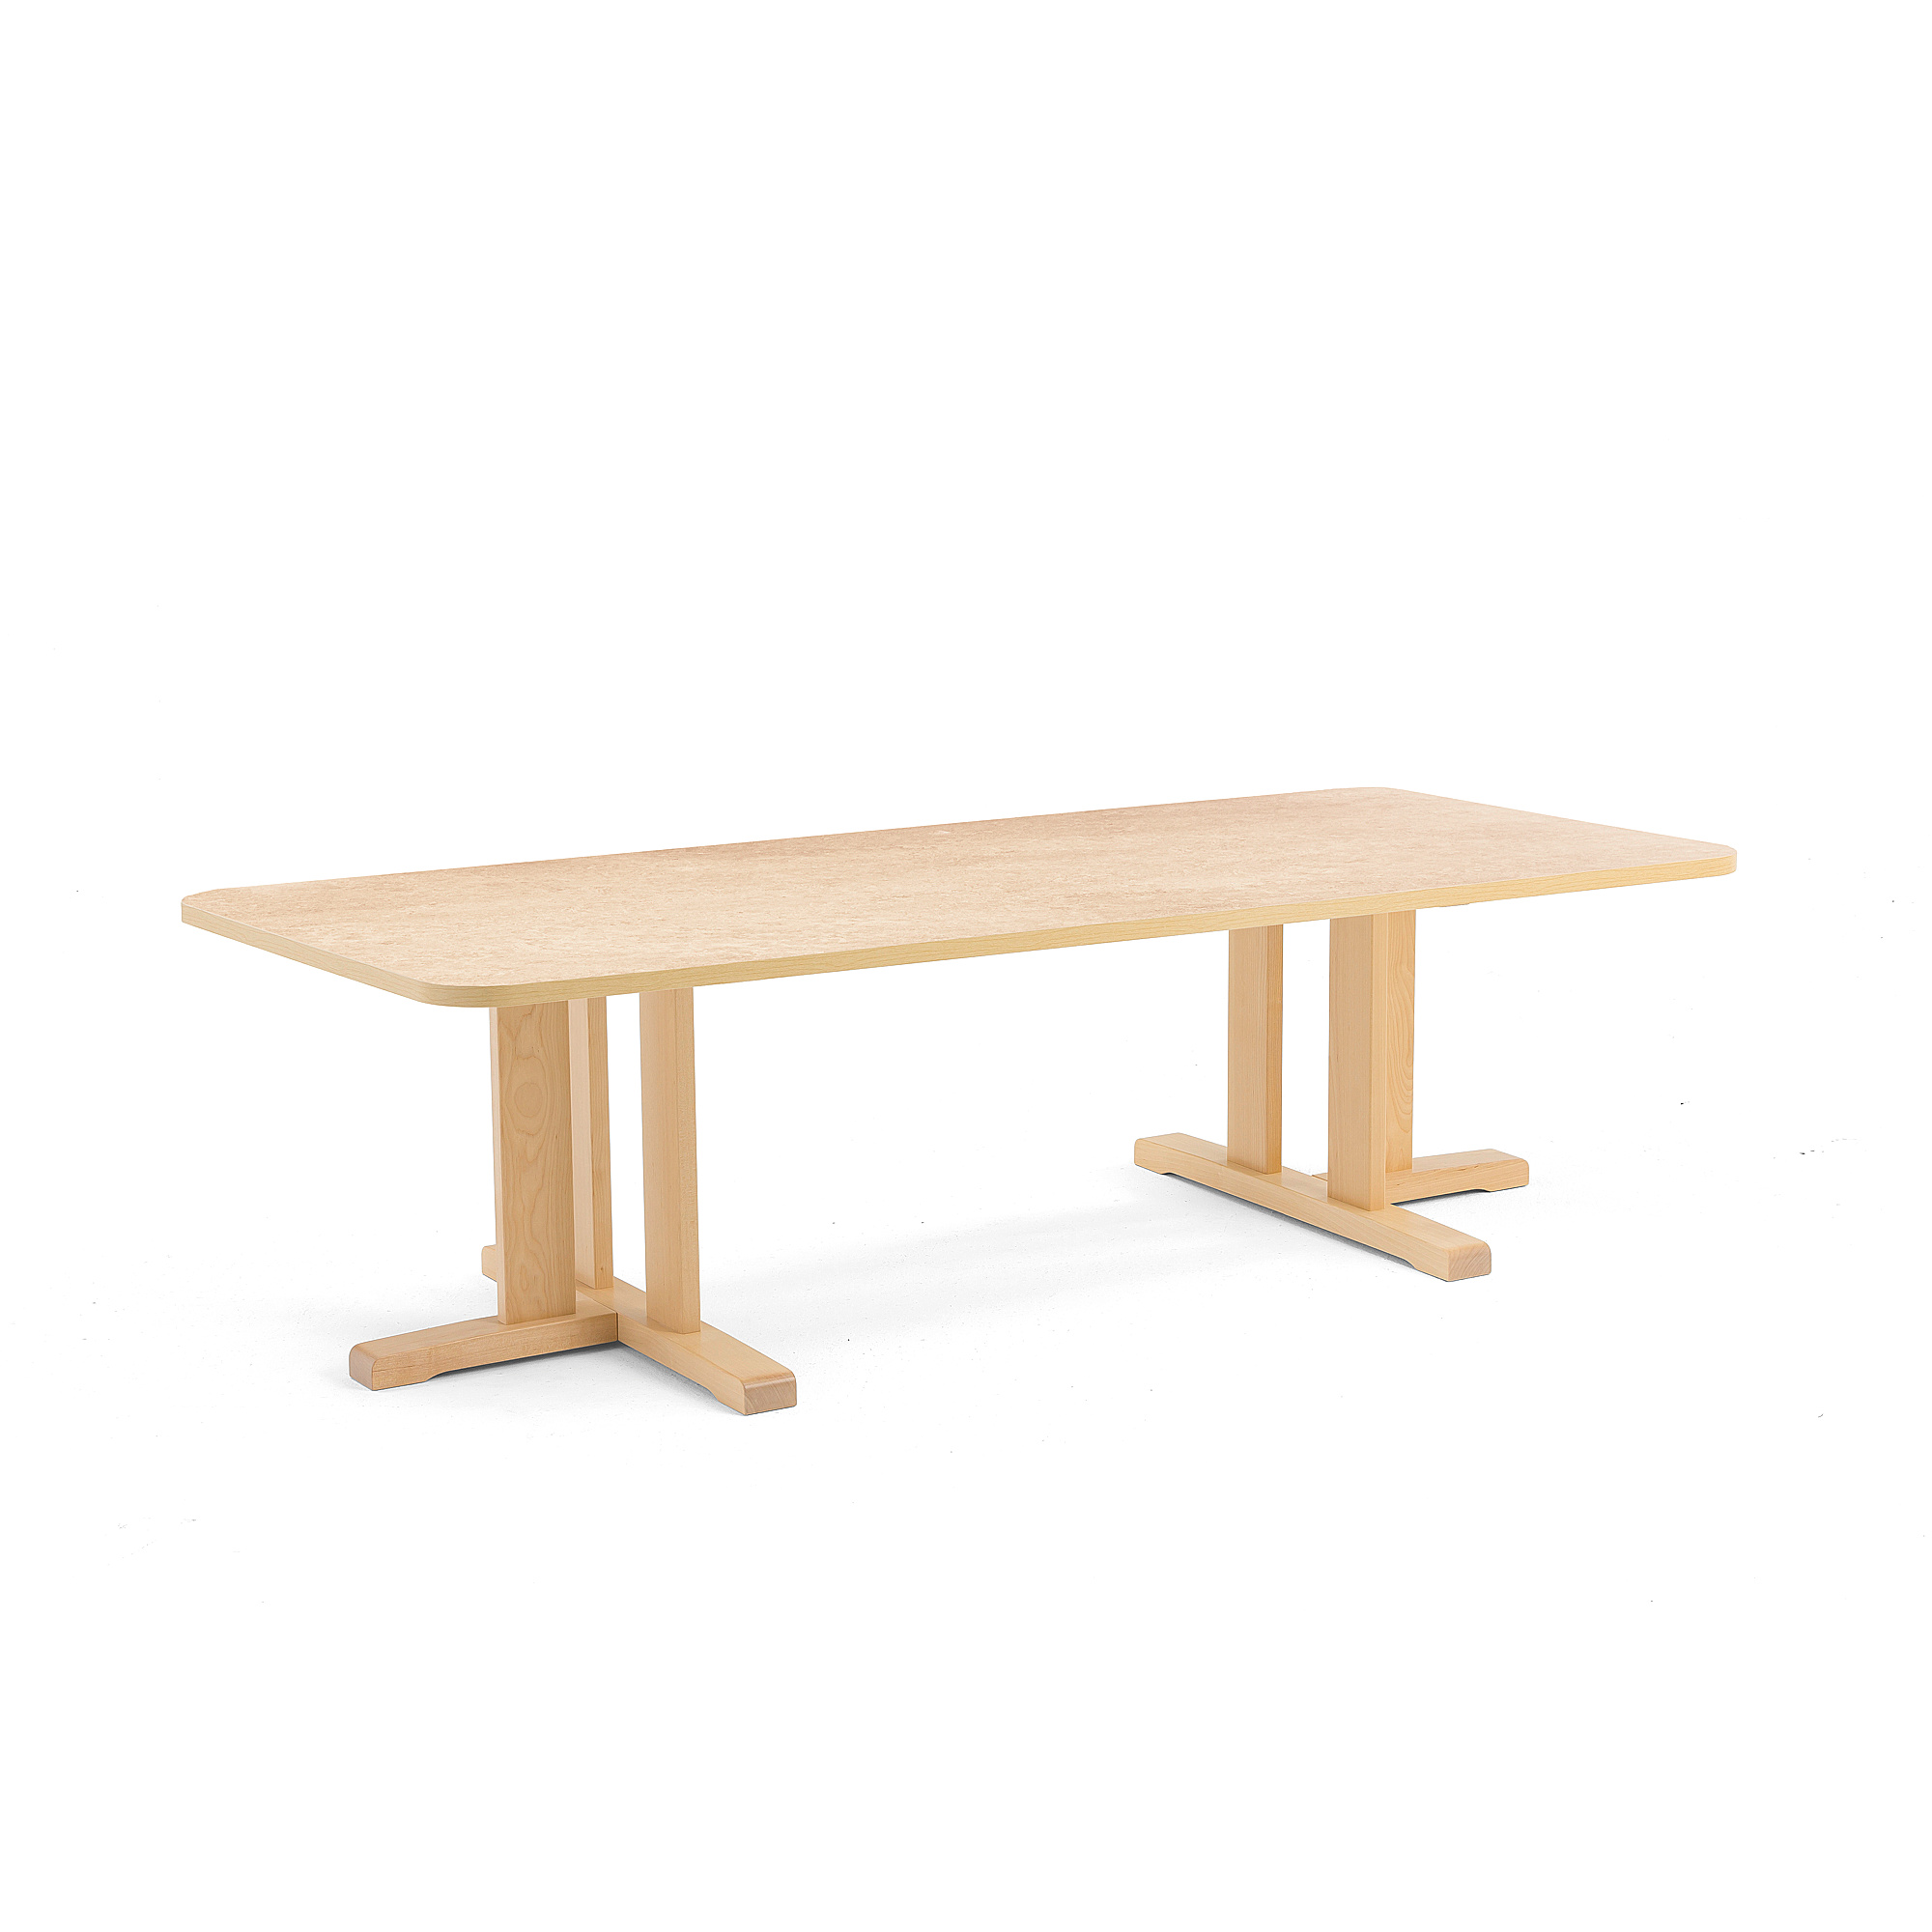 Stůl KUPOL, 1800x800x500 mm, obdélník, akustické linoleum, bříza/béžová